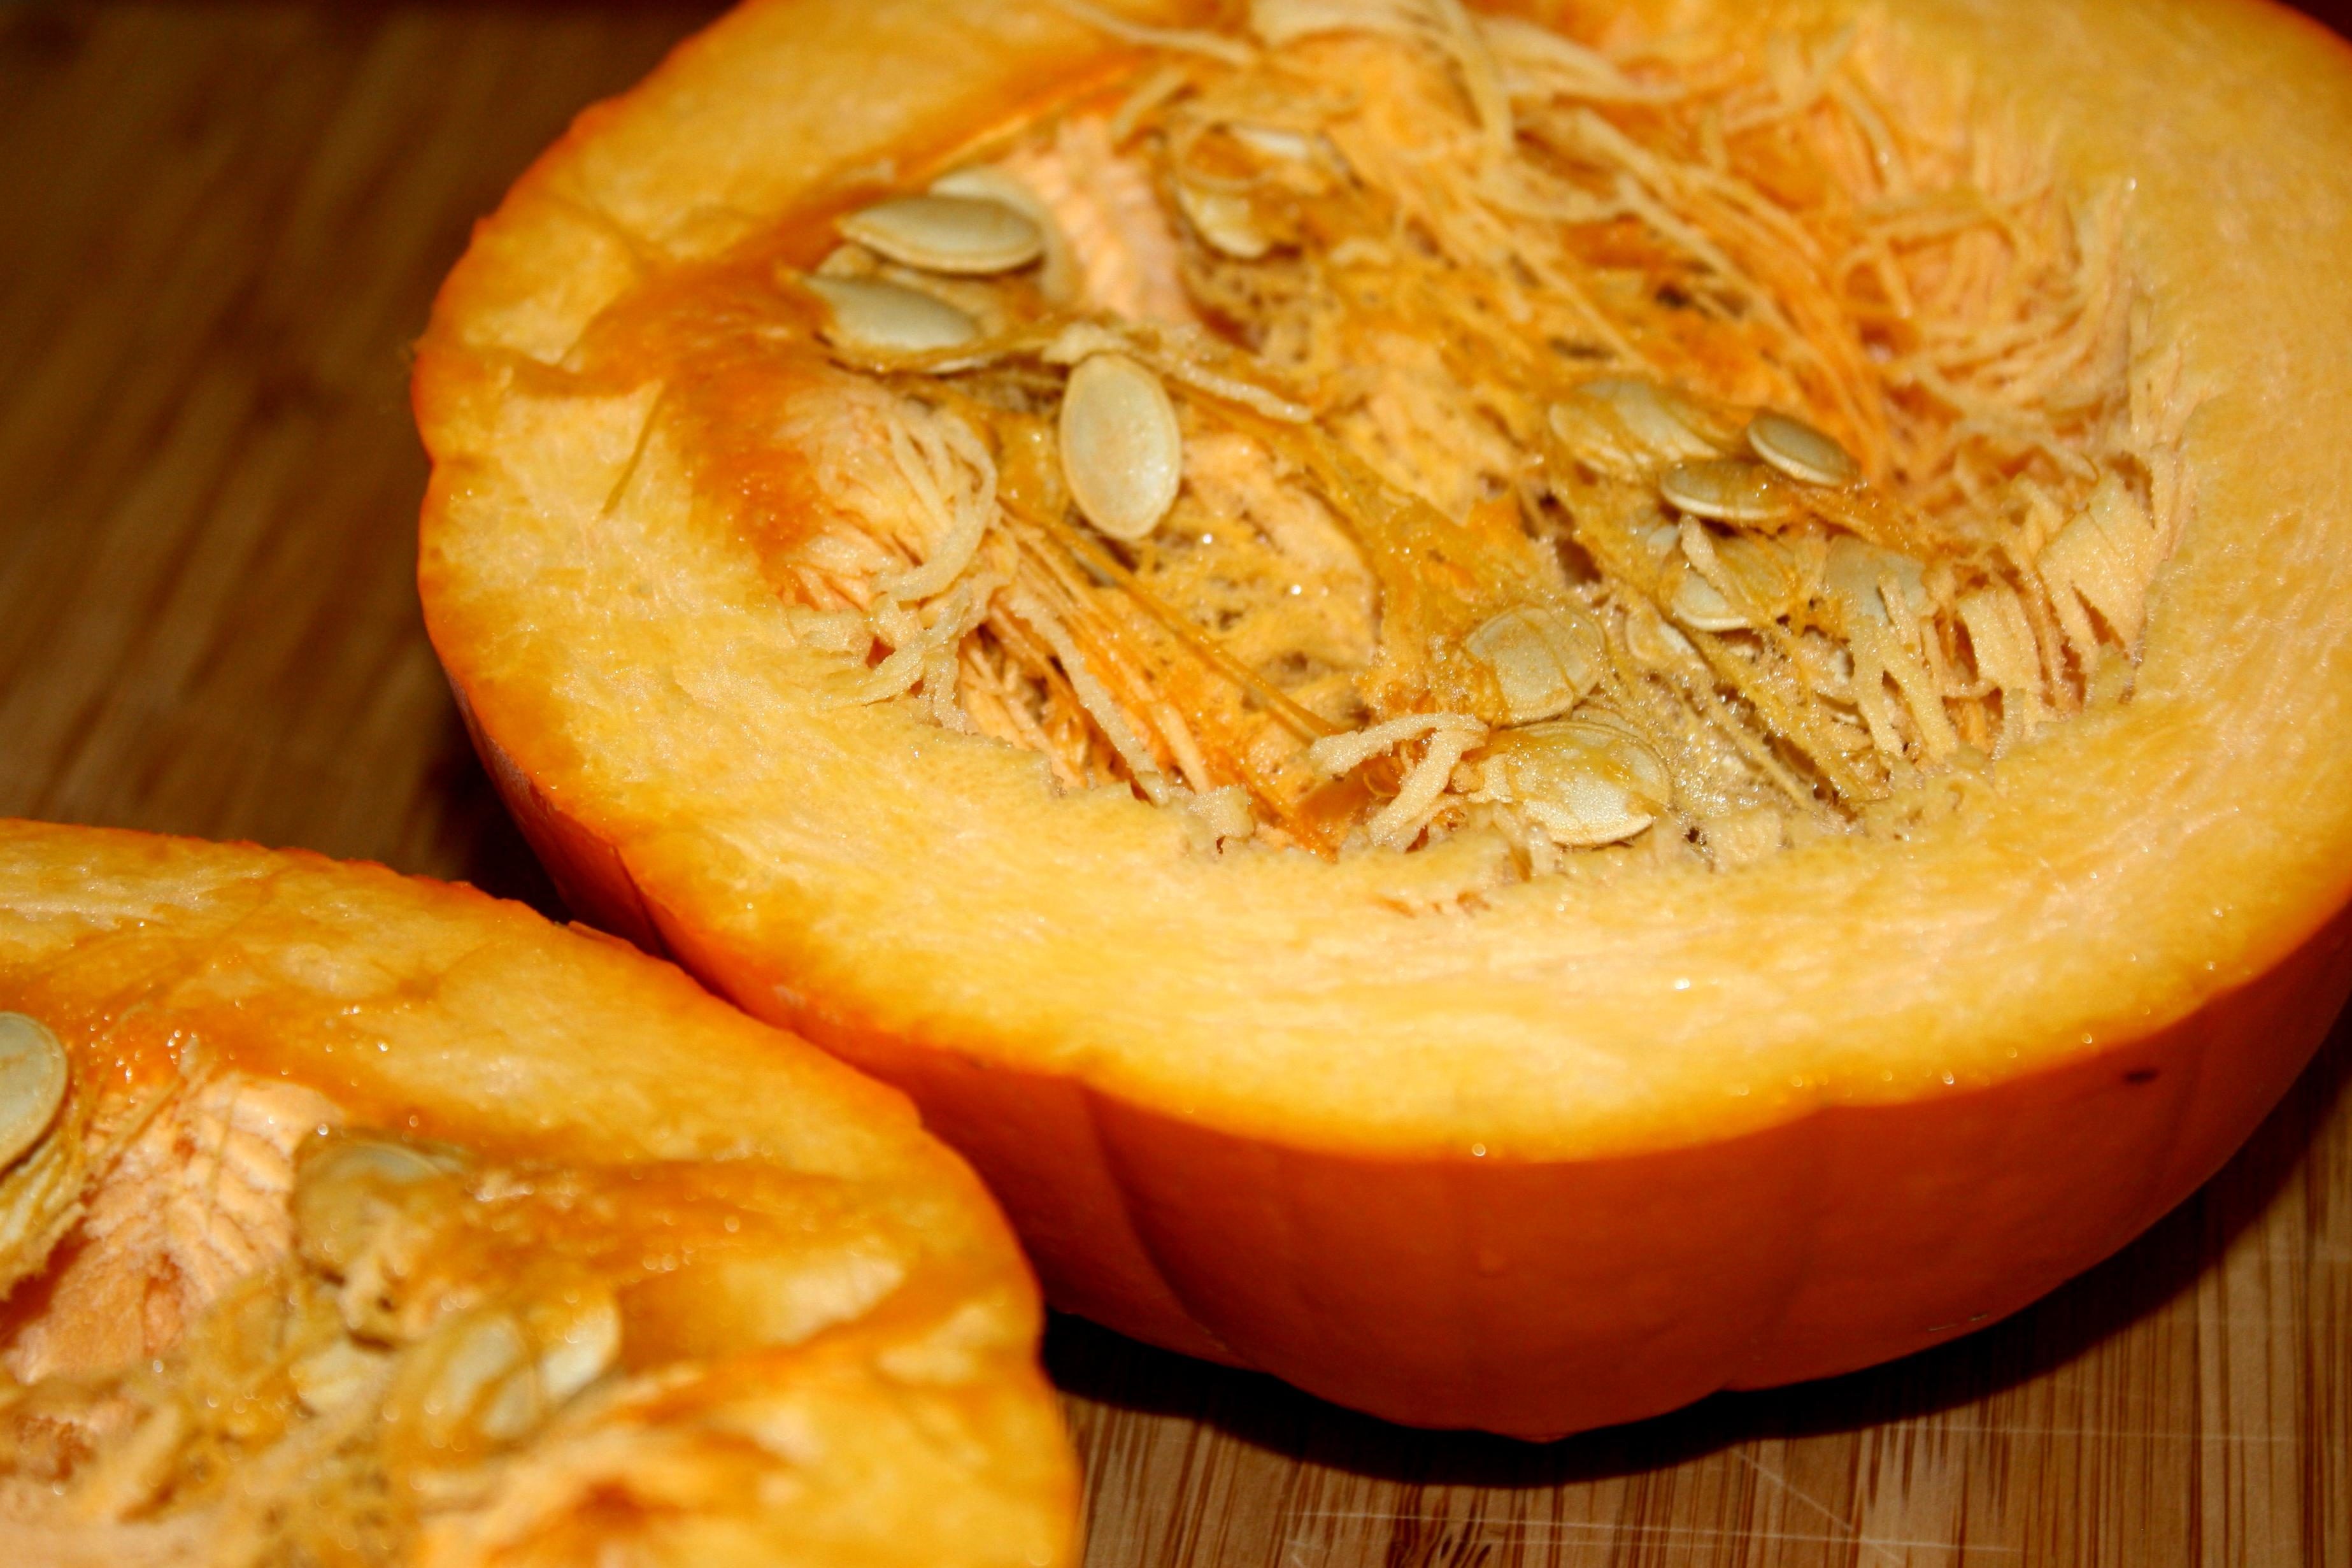 Free picture: pumpkin cut half, pumpkin seeds